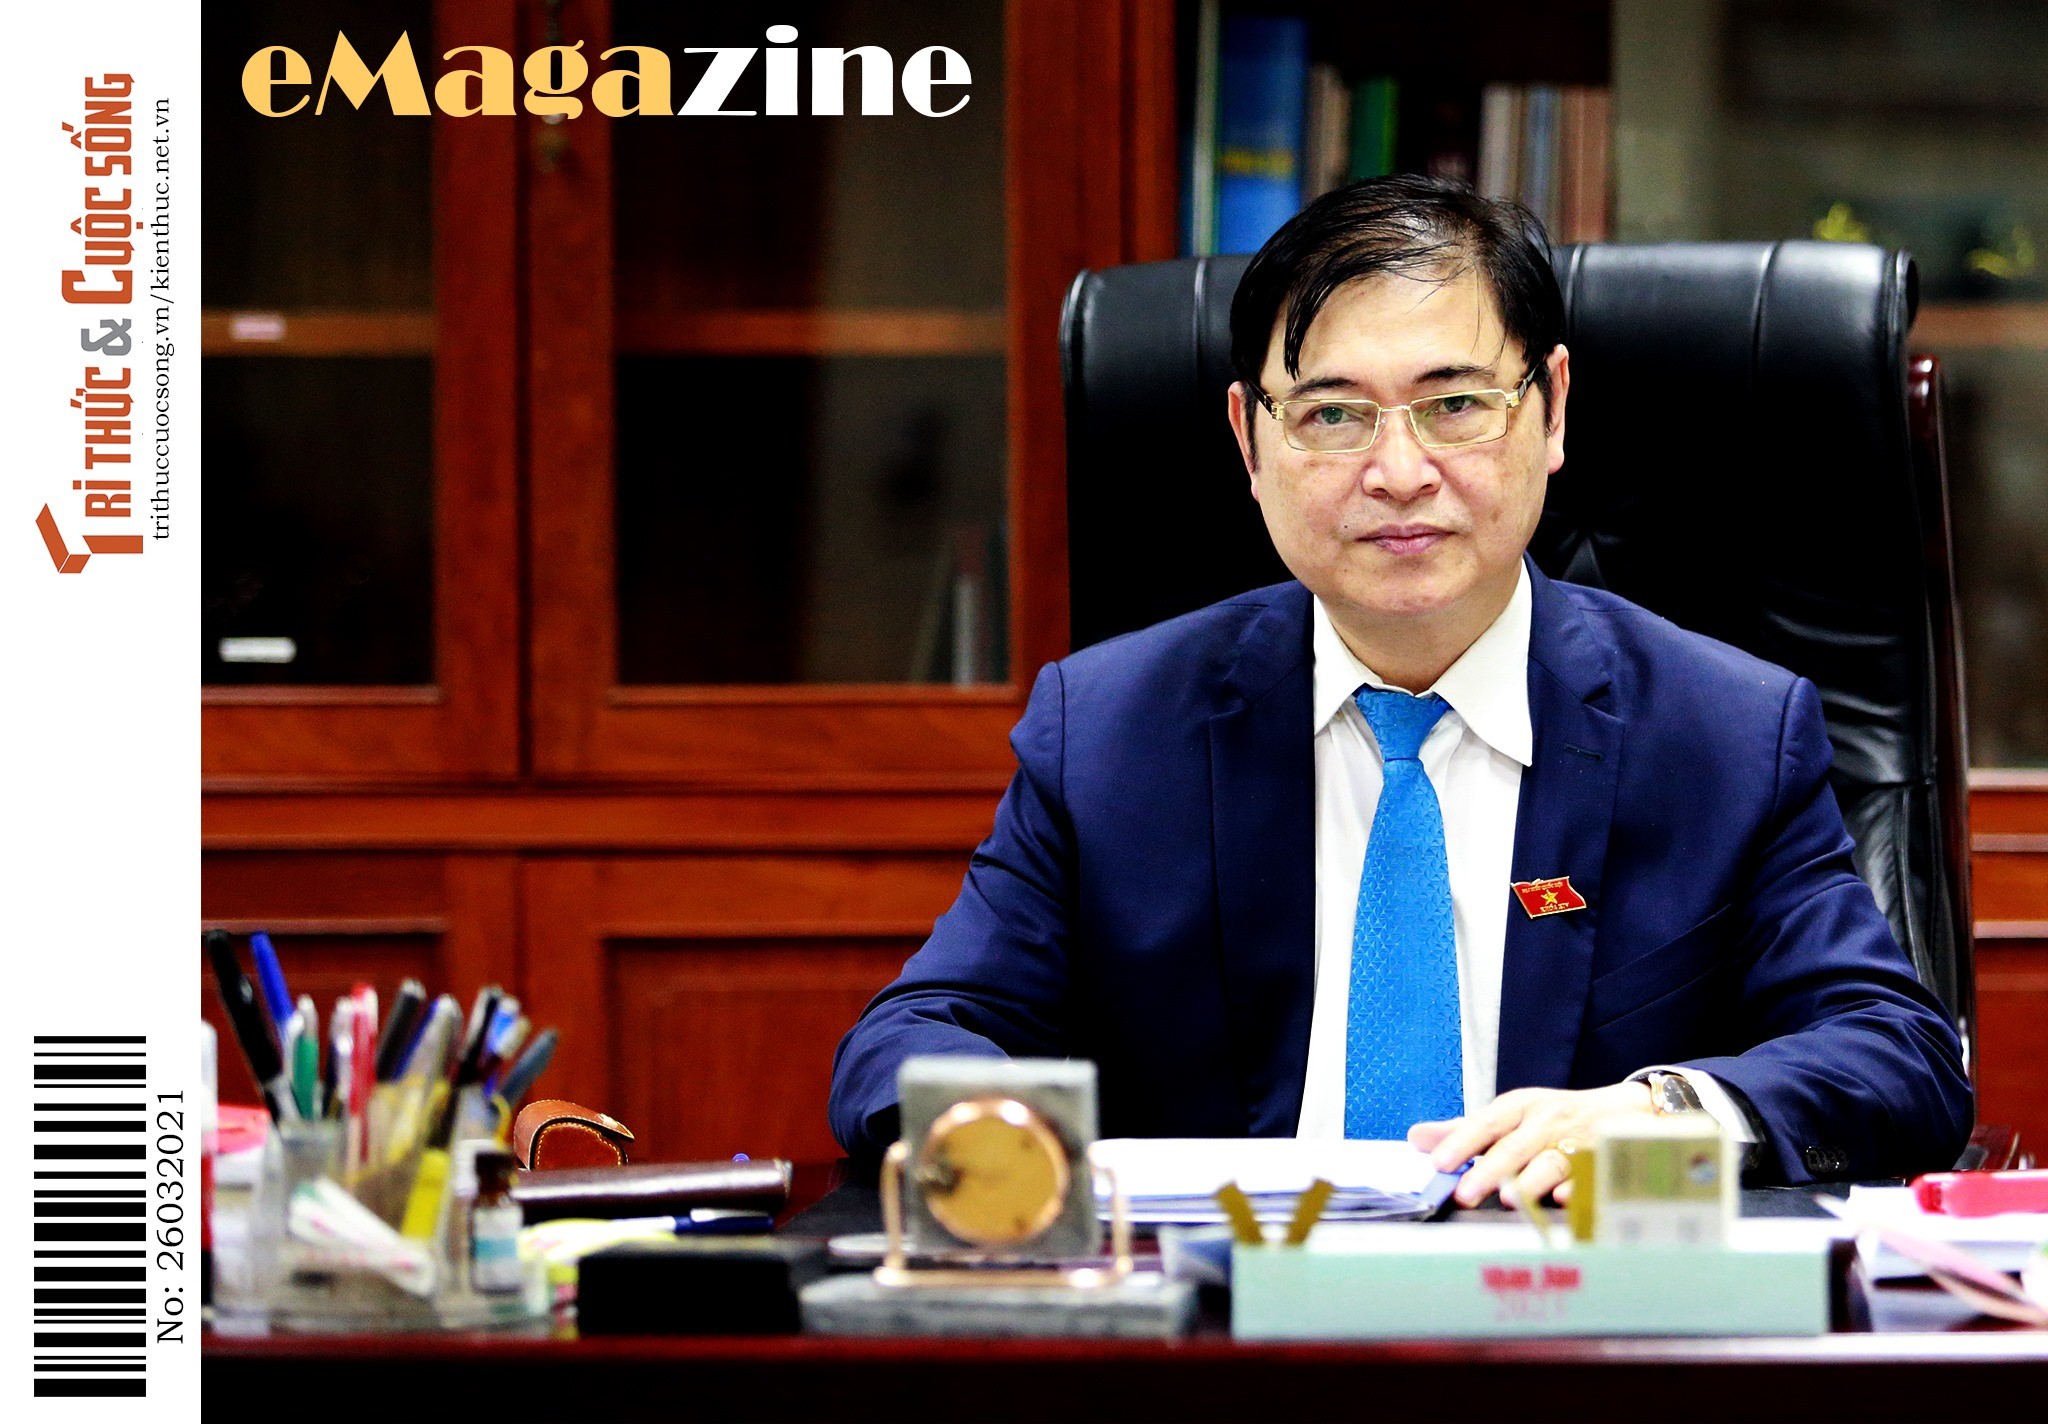 [e-Magazine] Chủ tịch VUSTA Phan Xuân Dũng: “Nhìn sâu vào quá khứ... nhìn xa về tương lai”